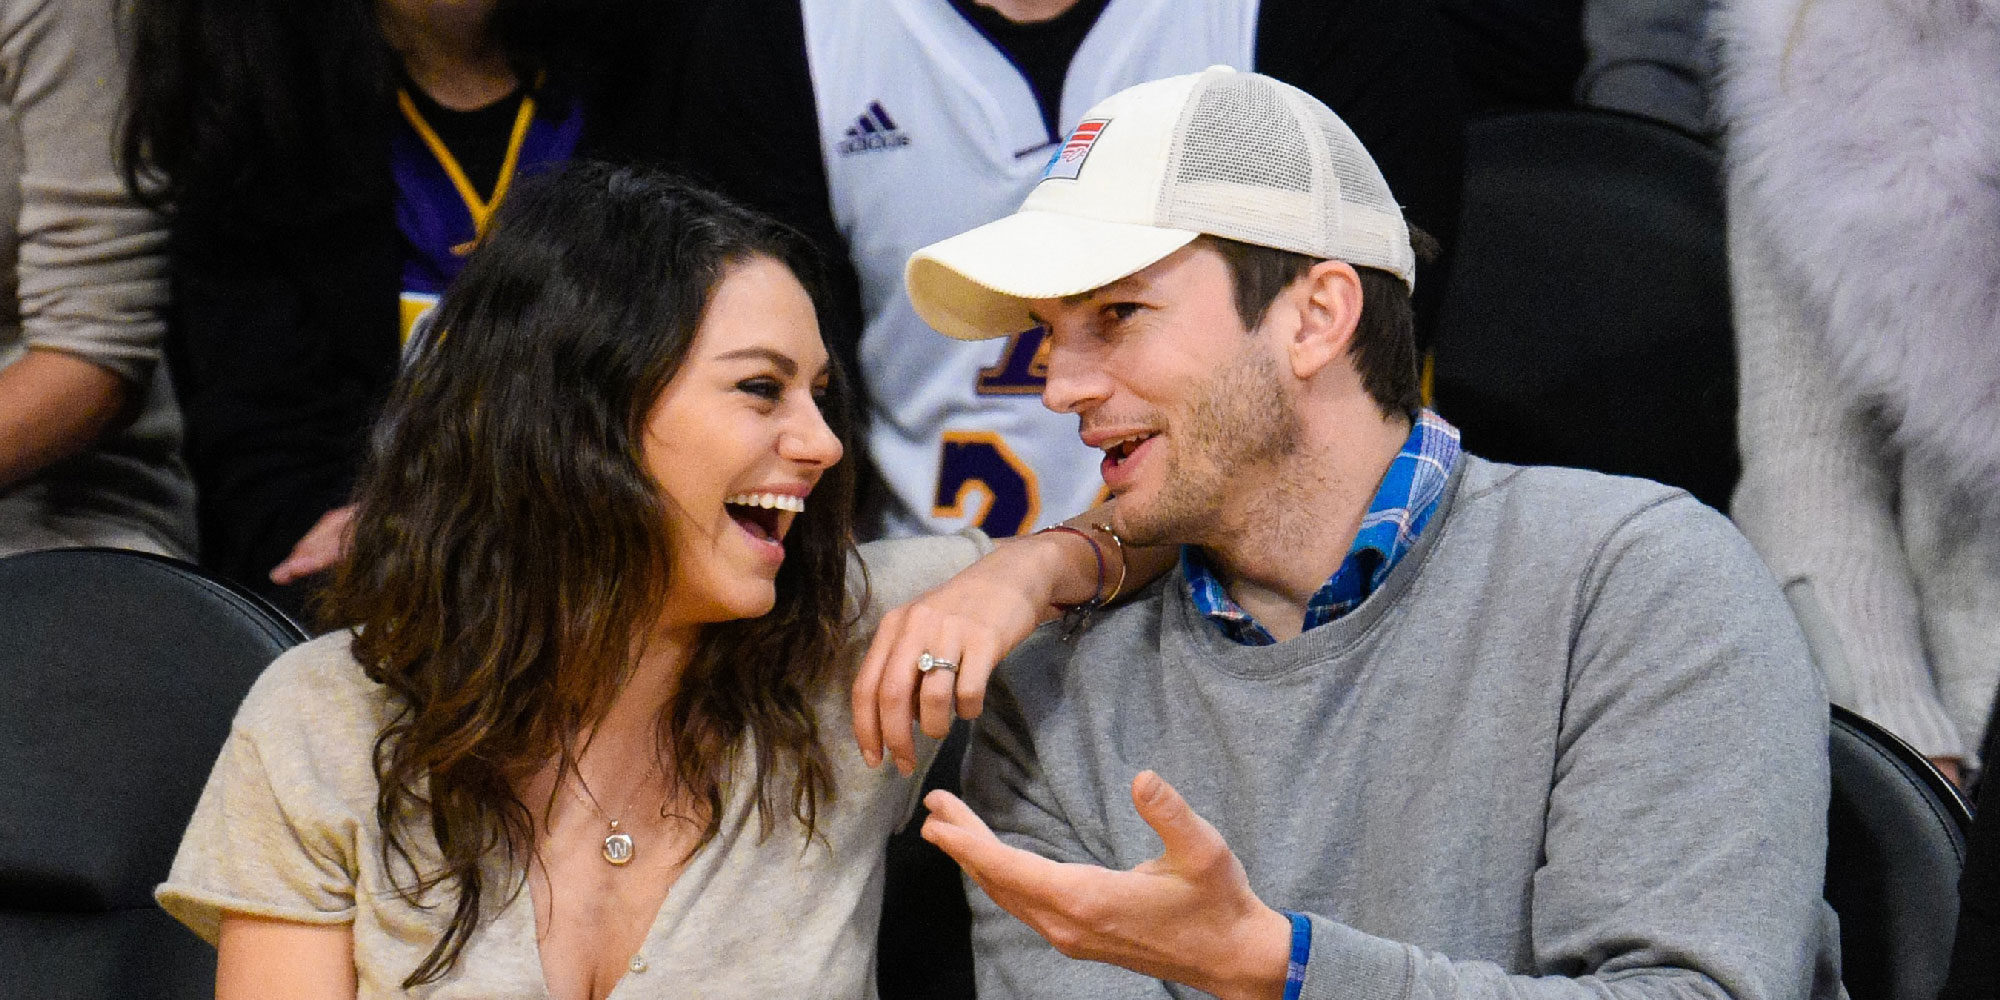 Ashton Kutcher y Mila Kunis han sido padres de su segundo hijo